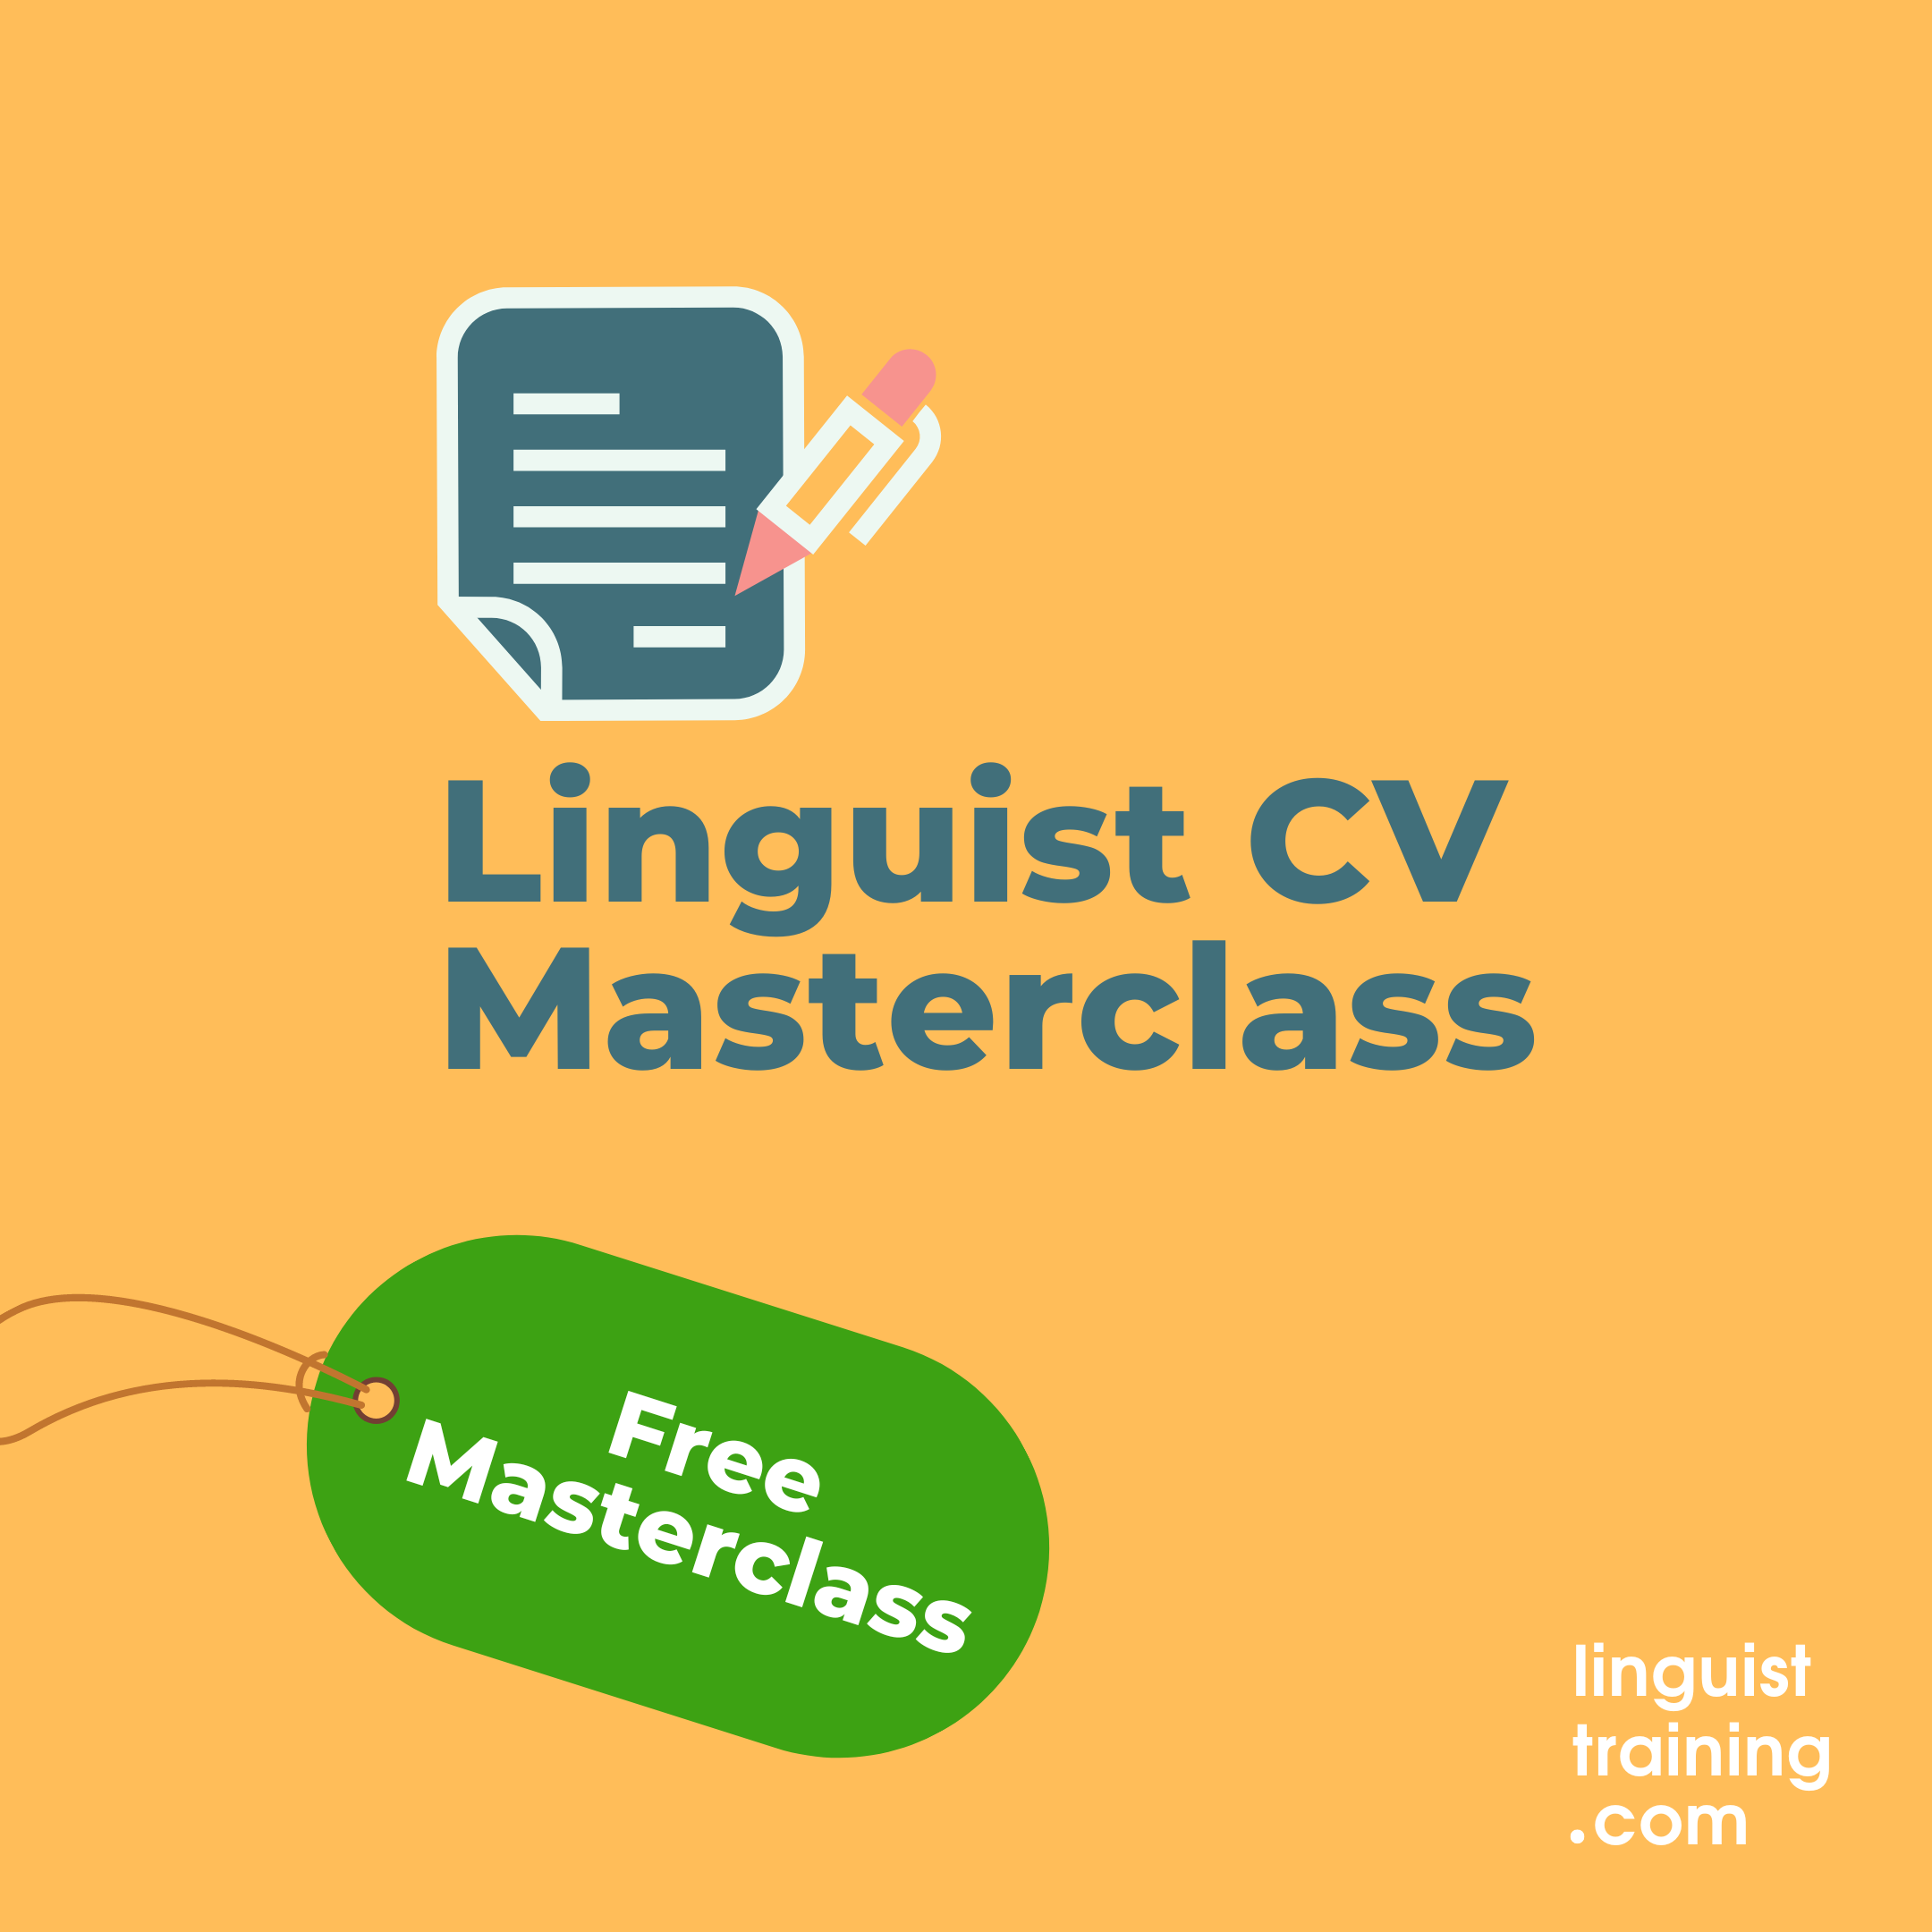 Linguist CV Masterclass only - £0